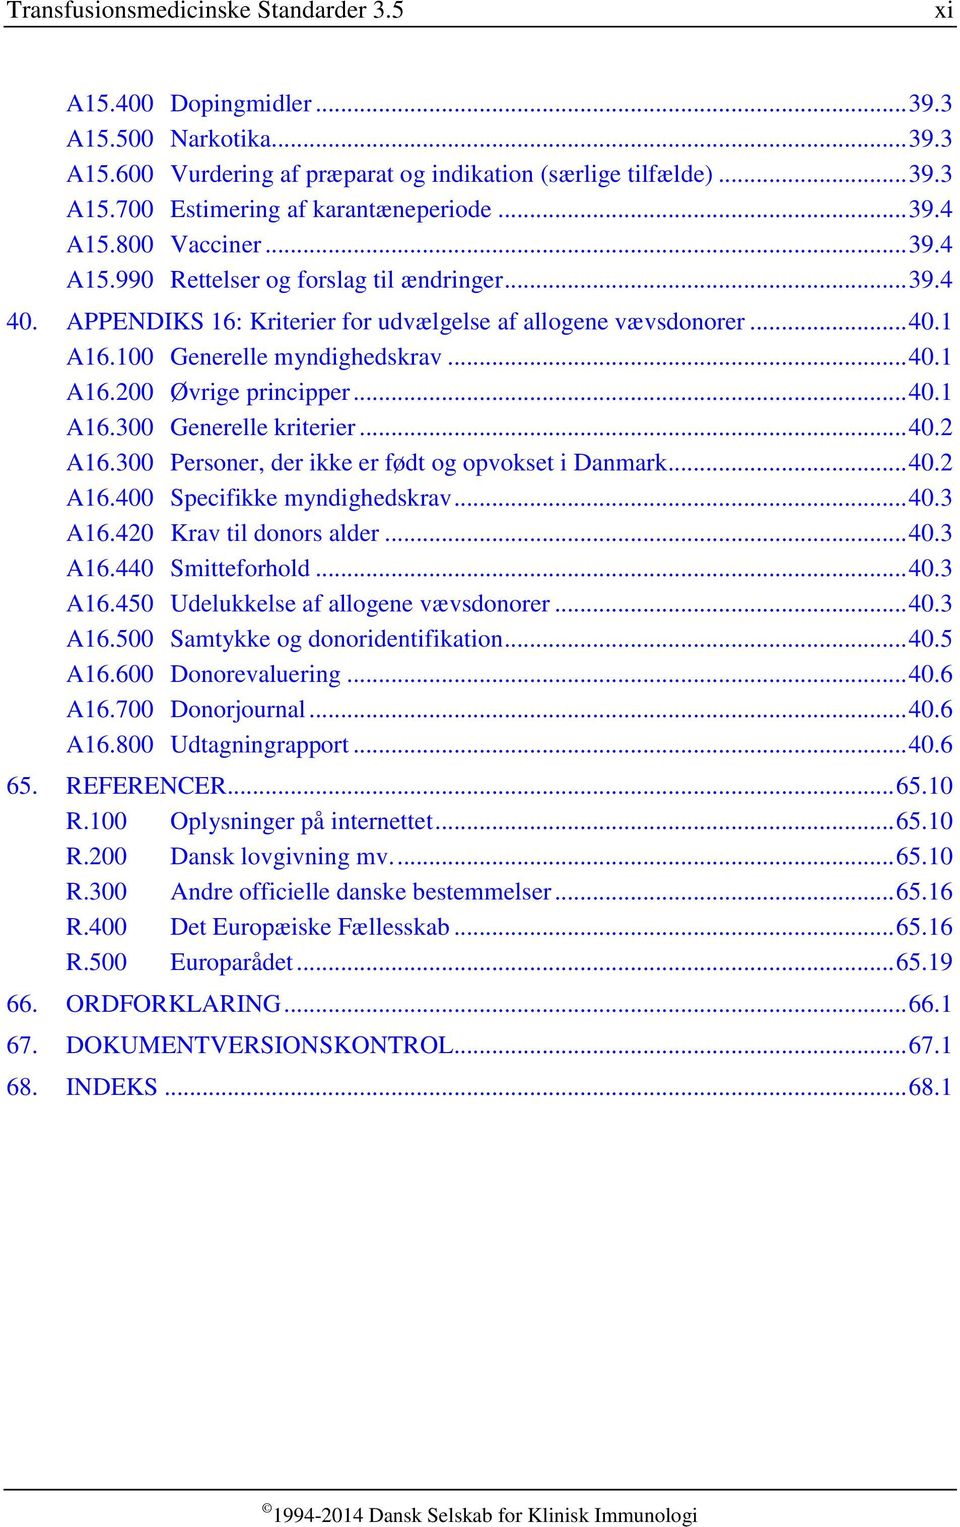 .. 40.1 A16.300 Generelle kriterier... 40.2 A16.300 Personer, der ikke er født og opvokset i Danmark... 40.2 A16.400 Specifikke myndighedskrav... 40.3 A16.420 Krav til donors alder... 40.3 A16.440 Smitteforhold.